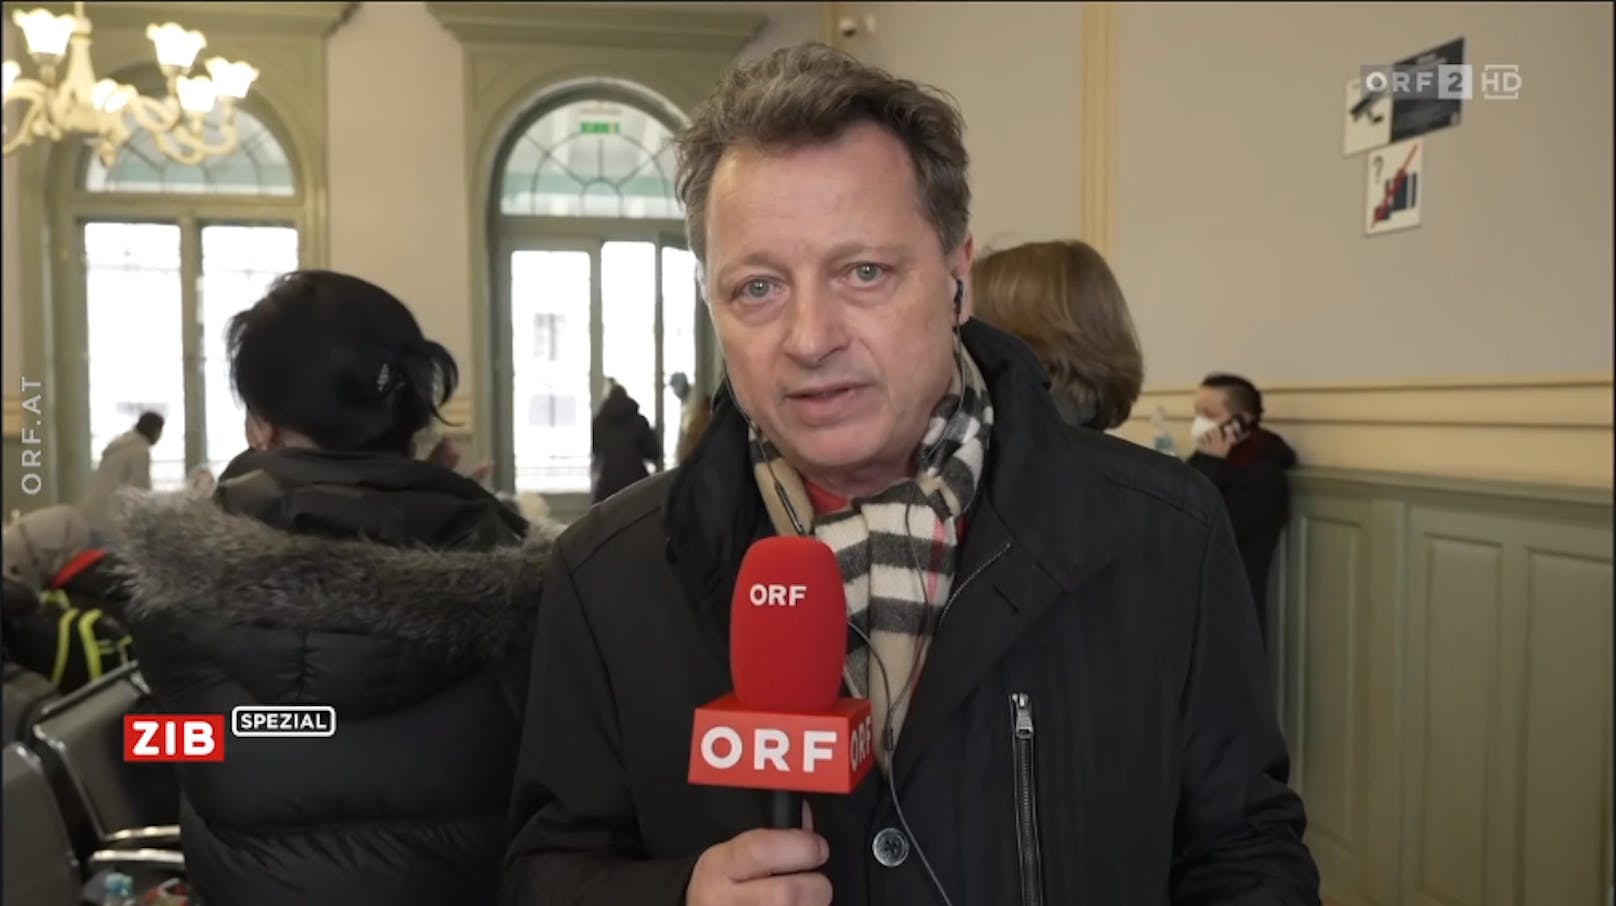 "Na, ned scho wieder" – ORF-Star wird wegen Ton grantig